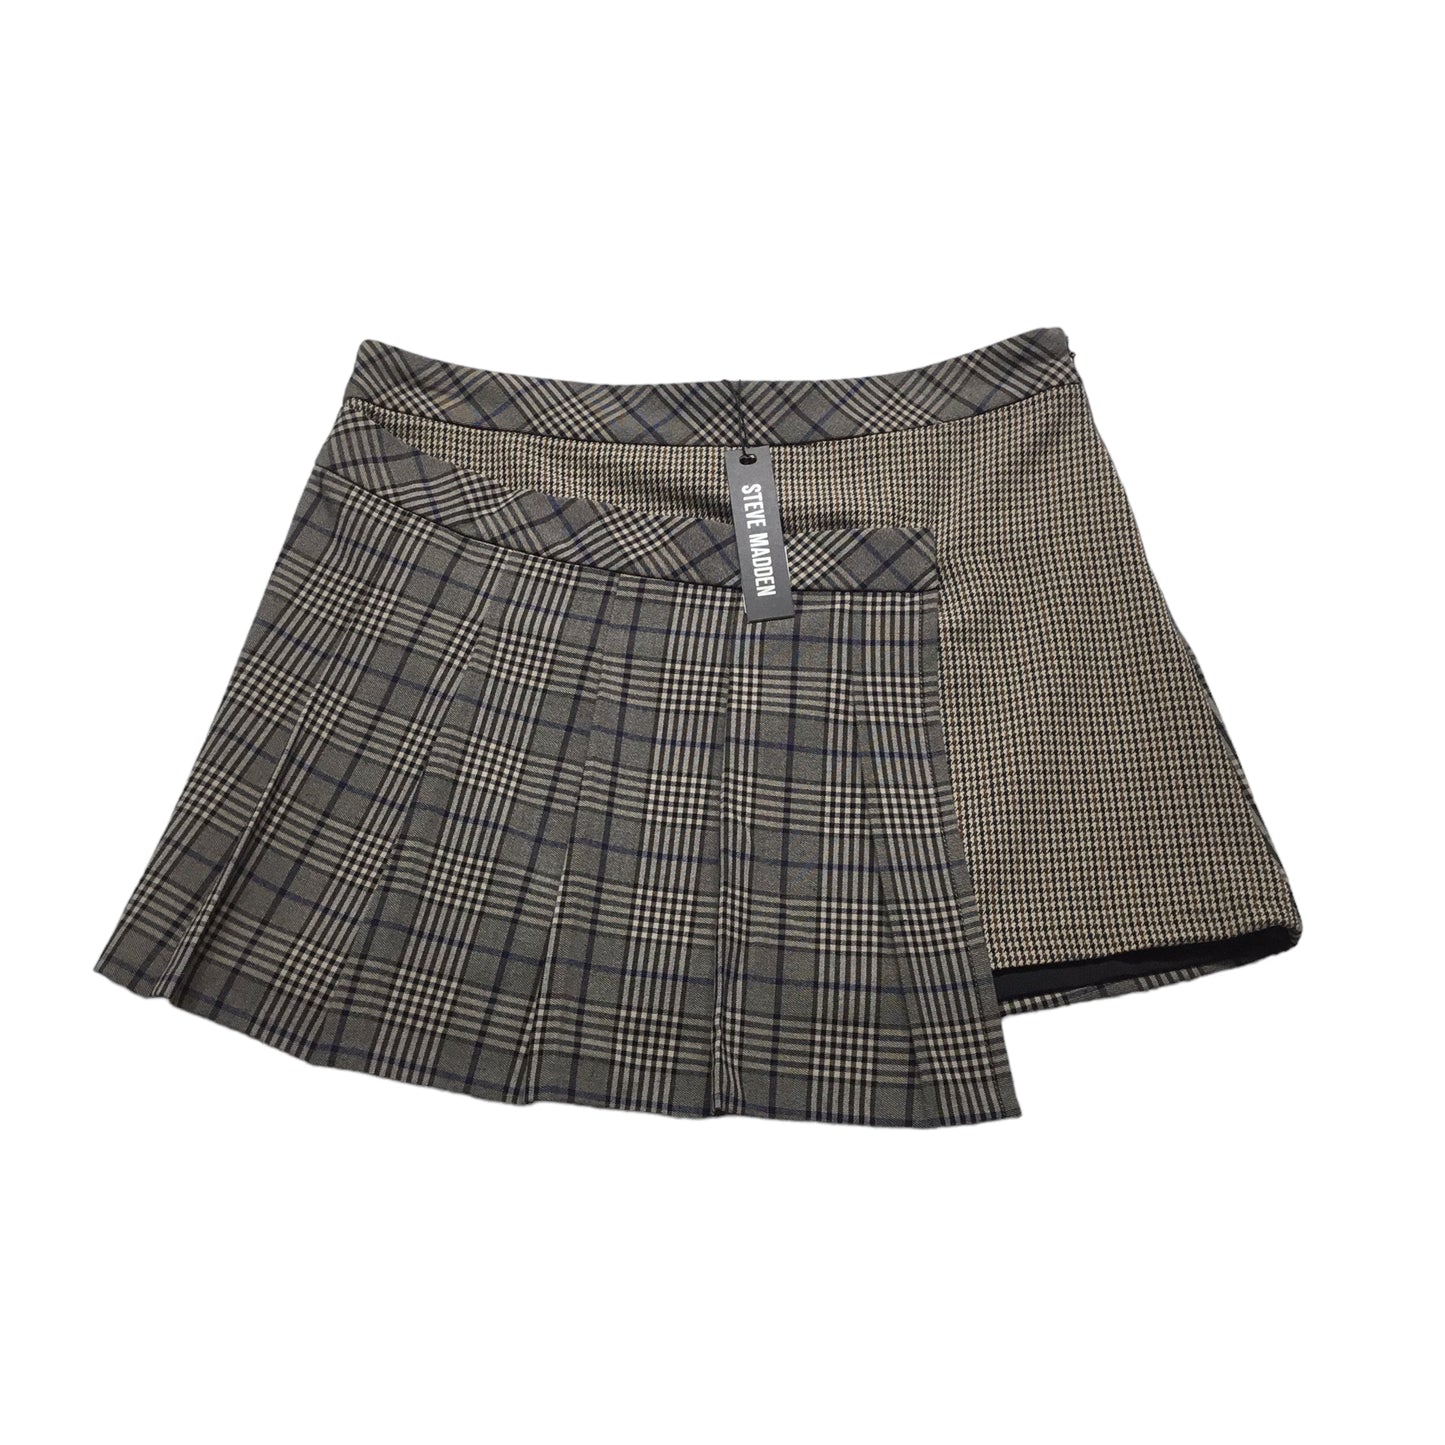 Skirt Mini & Short By Steve Madden  Size: 6